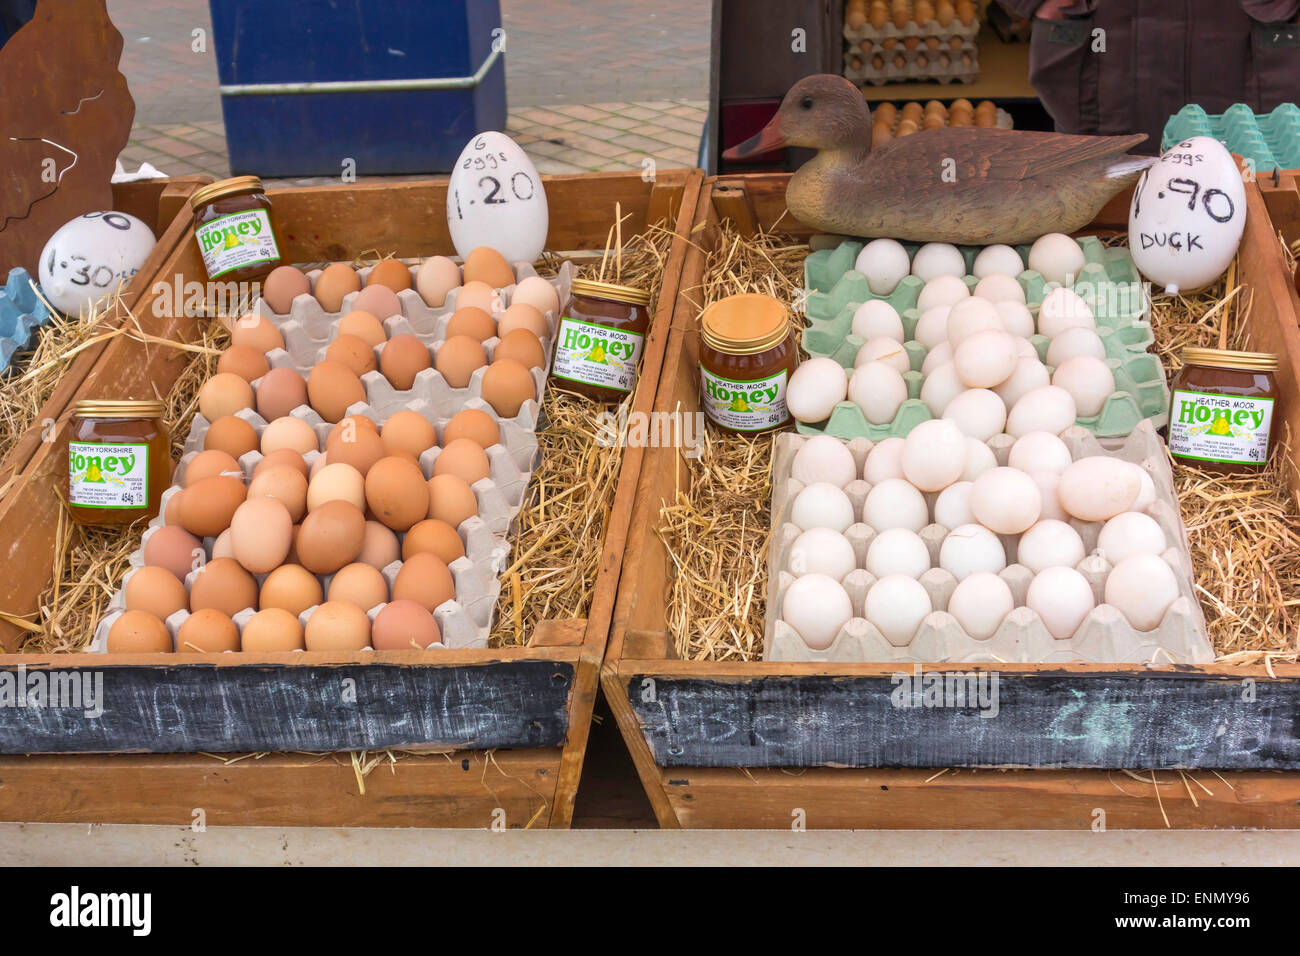 Una pantalla de huevos de gallinas marrón y blanco huevos de pato y miel de brezo sobre un especialista puesto en el mercado del agricultor. Foto de stock